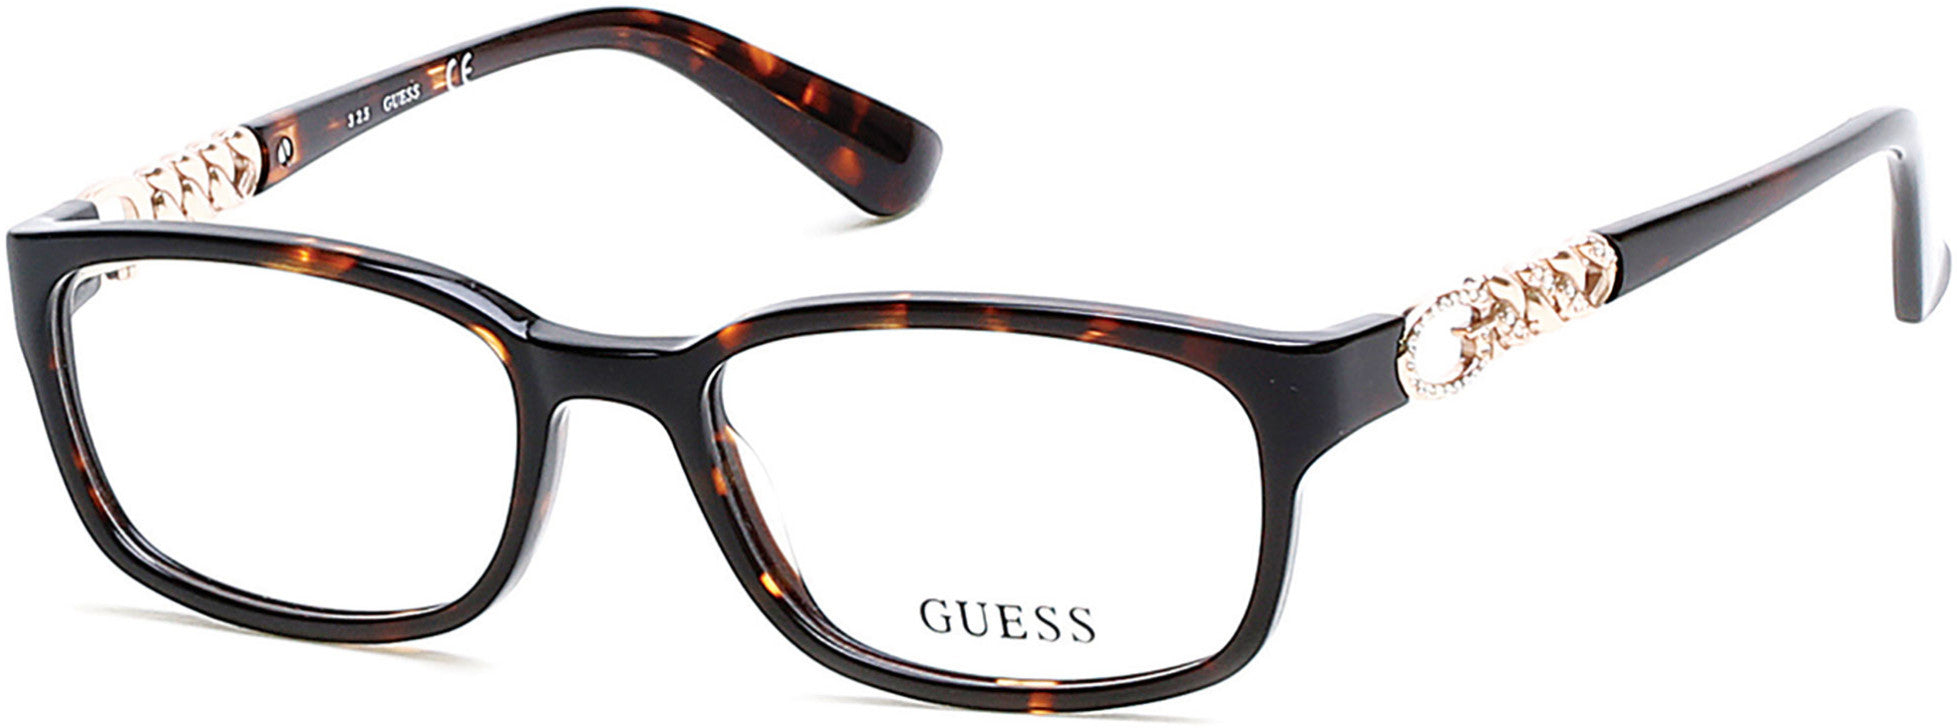 Guess GU2558 Geometric Eyeglasses 050-050 - Dark Brown/other